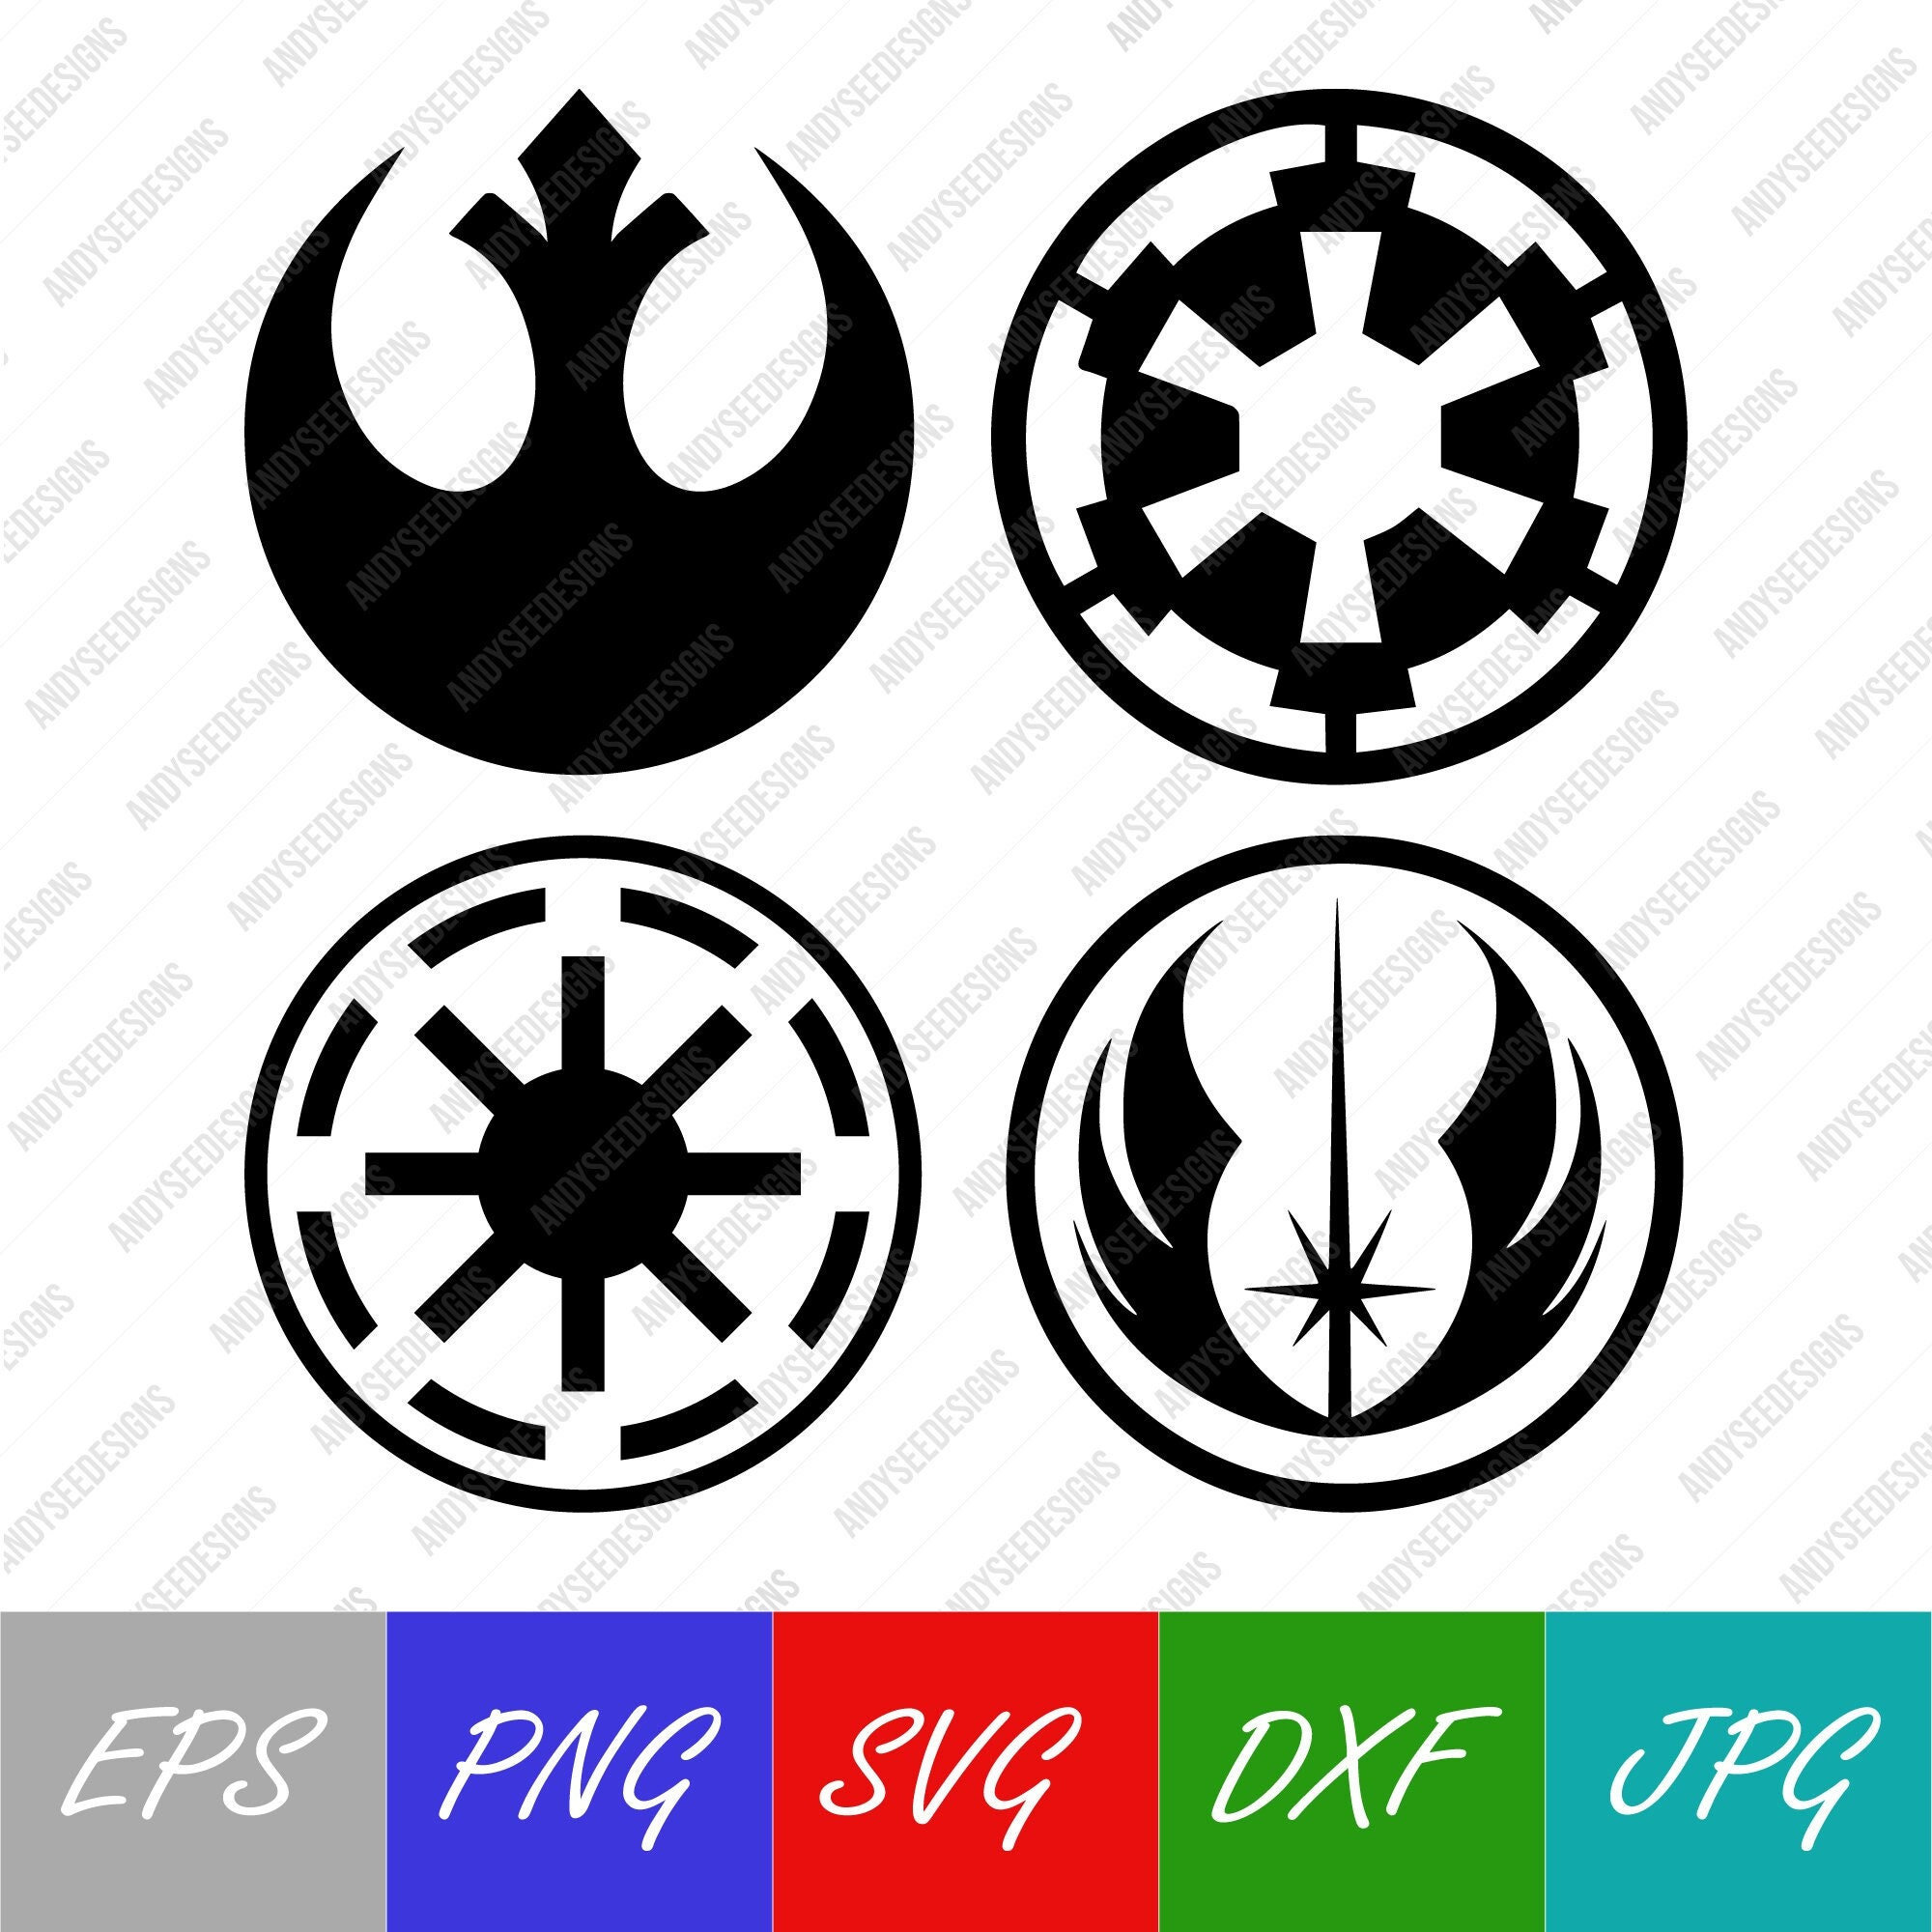 File:Star Wars Jedi Fallen Order logo.svg - Wikimedia Commons